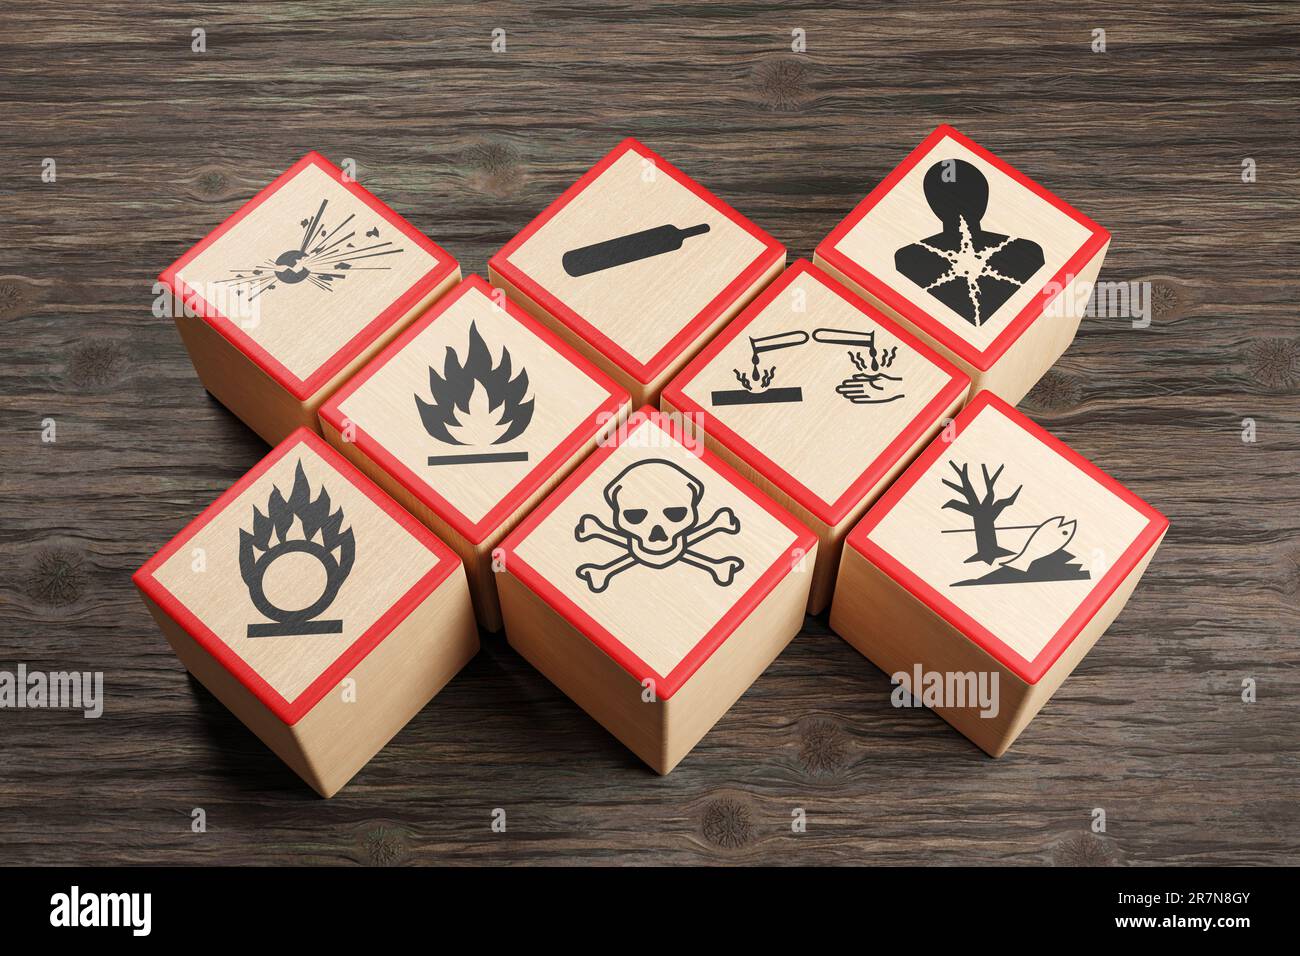 Holzblöcke mit verschiedenen Symbolen für chemische Gefahrenhinweise auf Holztisch. Das Konzept der toxischen Substanzen und der Arbeitsmedizin Stockfoto